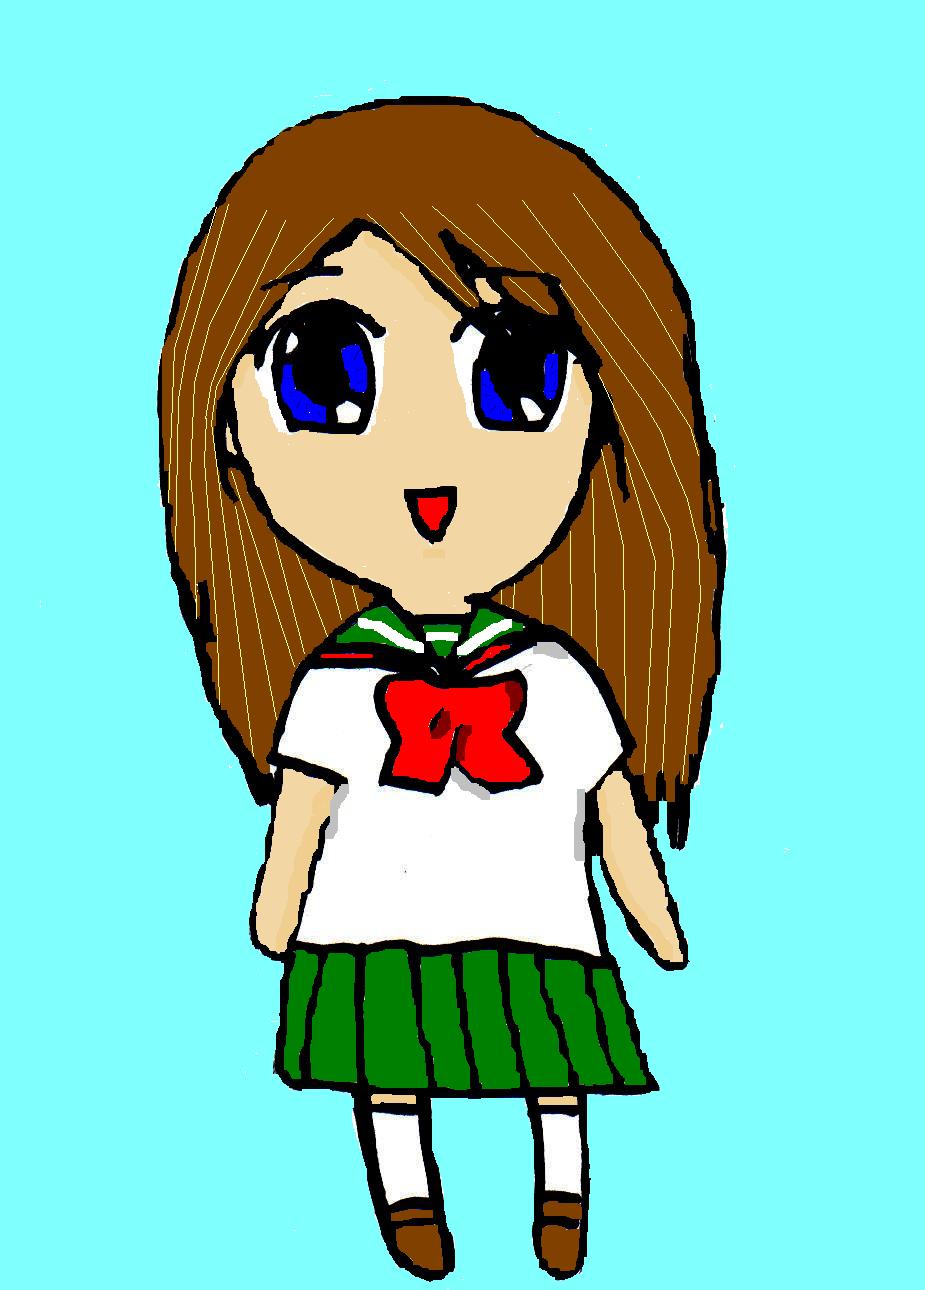 Chibi school girl by Animeviolingirl